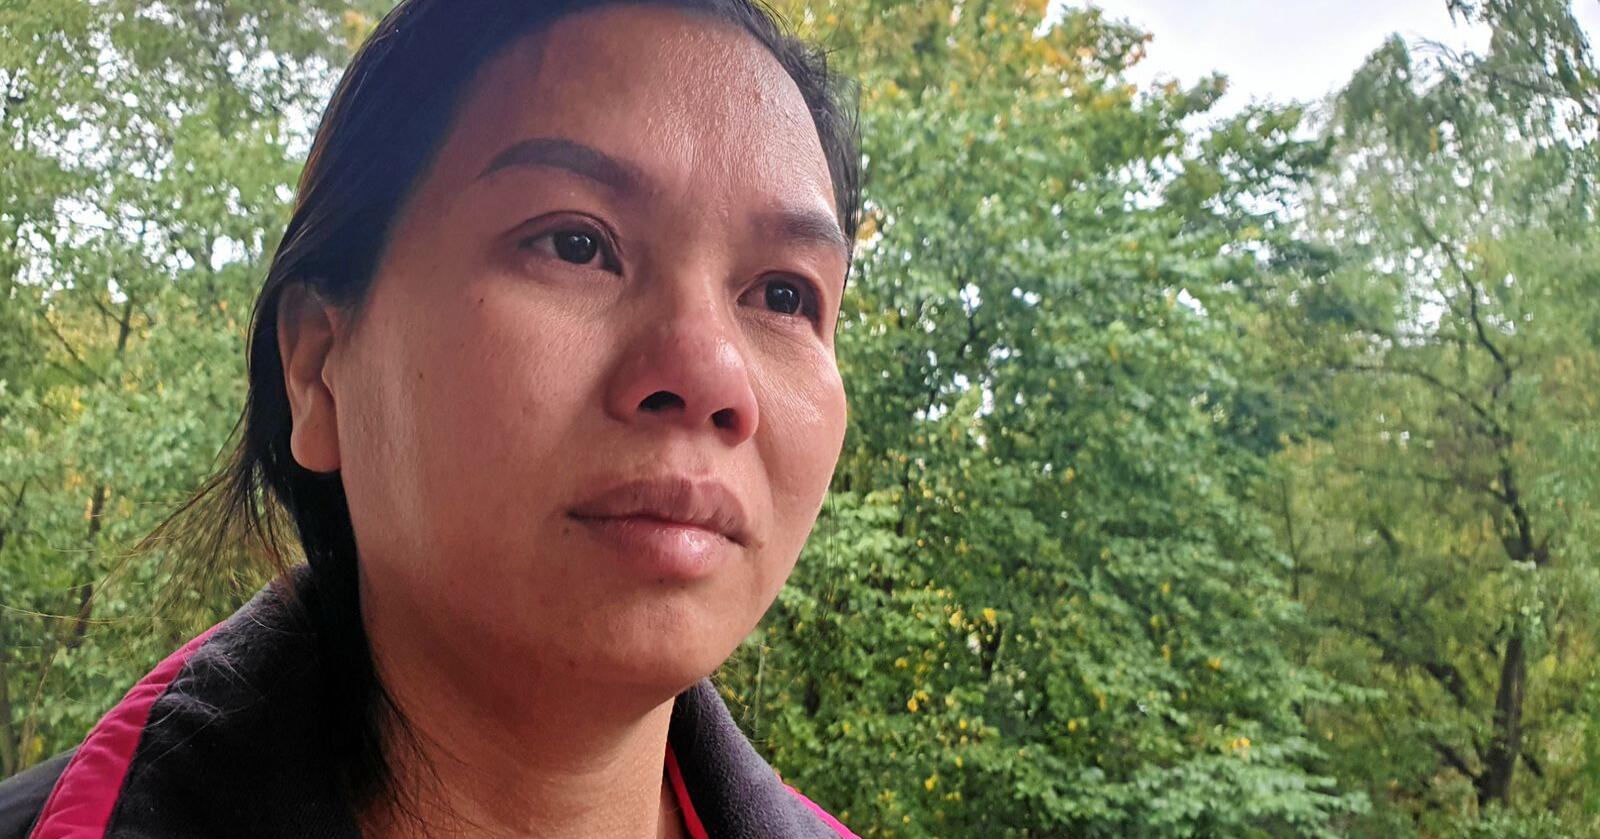 Dao Thi Hiep har i sommer jobbet som jordbærplukker i Norge. Nå vet hun ikke når hun kan komme hjem til familien og de tre barna. Foto: Ola Karlsen